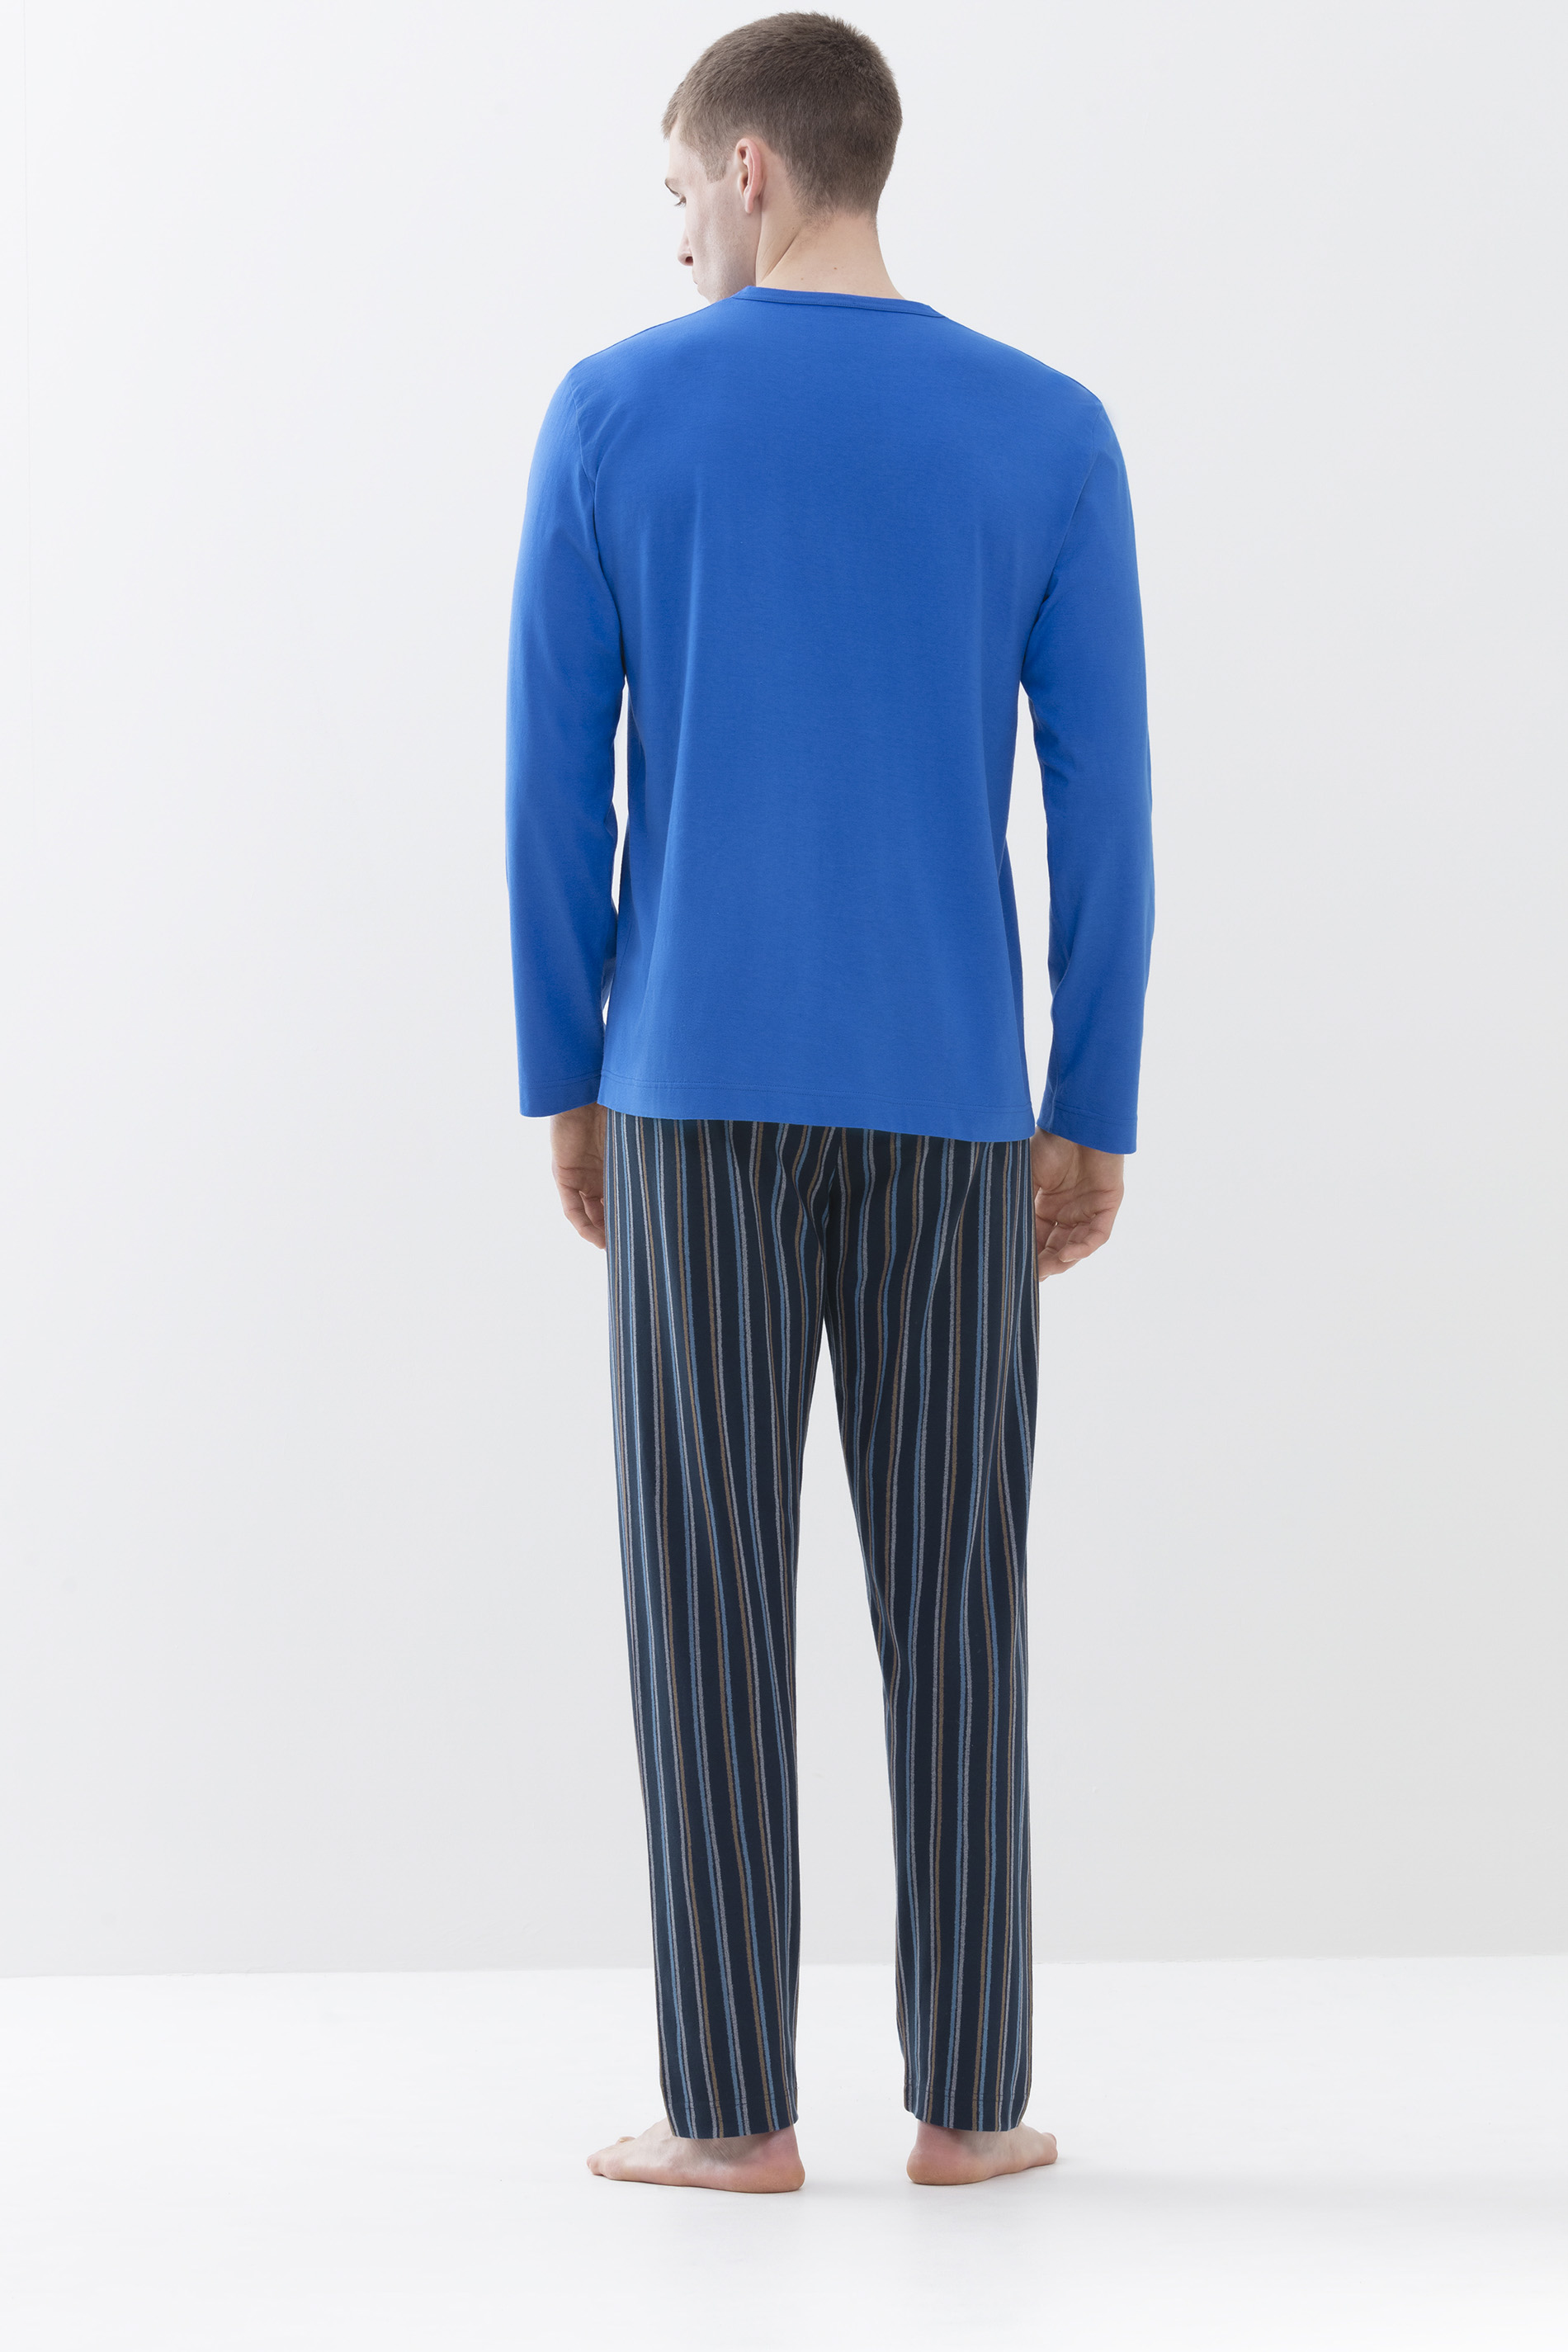 Schlafanzug Porcelain Blue Serie Unregular Stripes Rückansicht | mey®